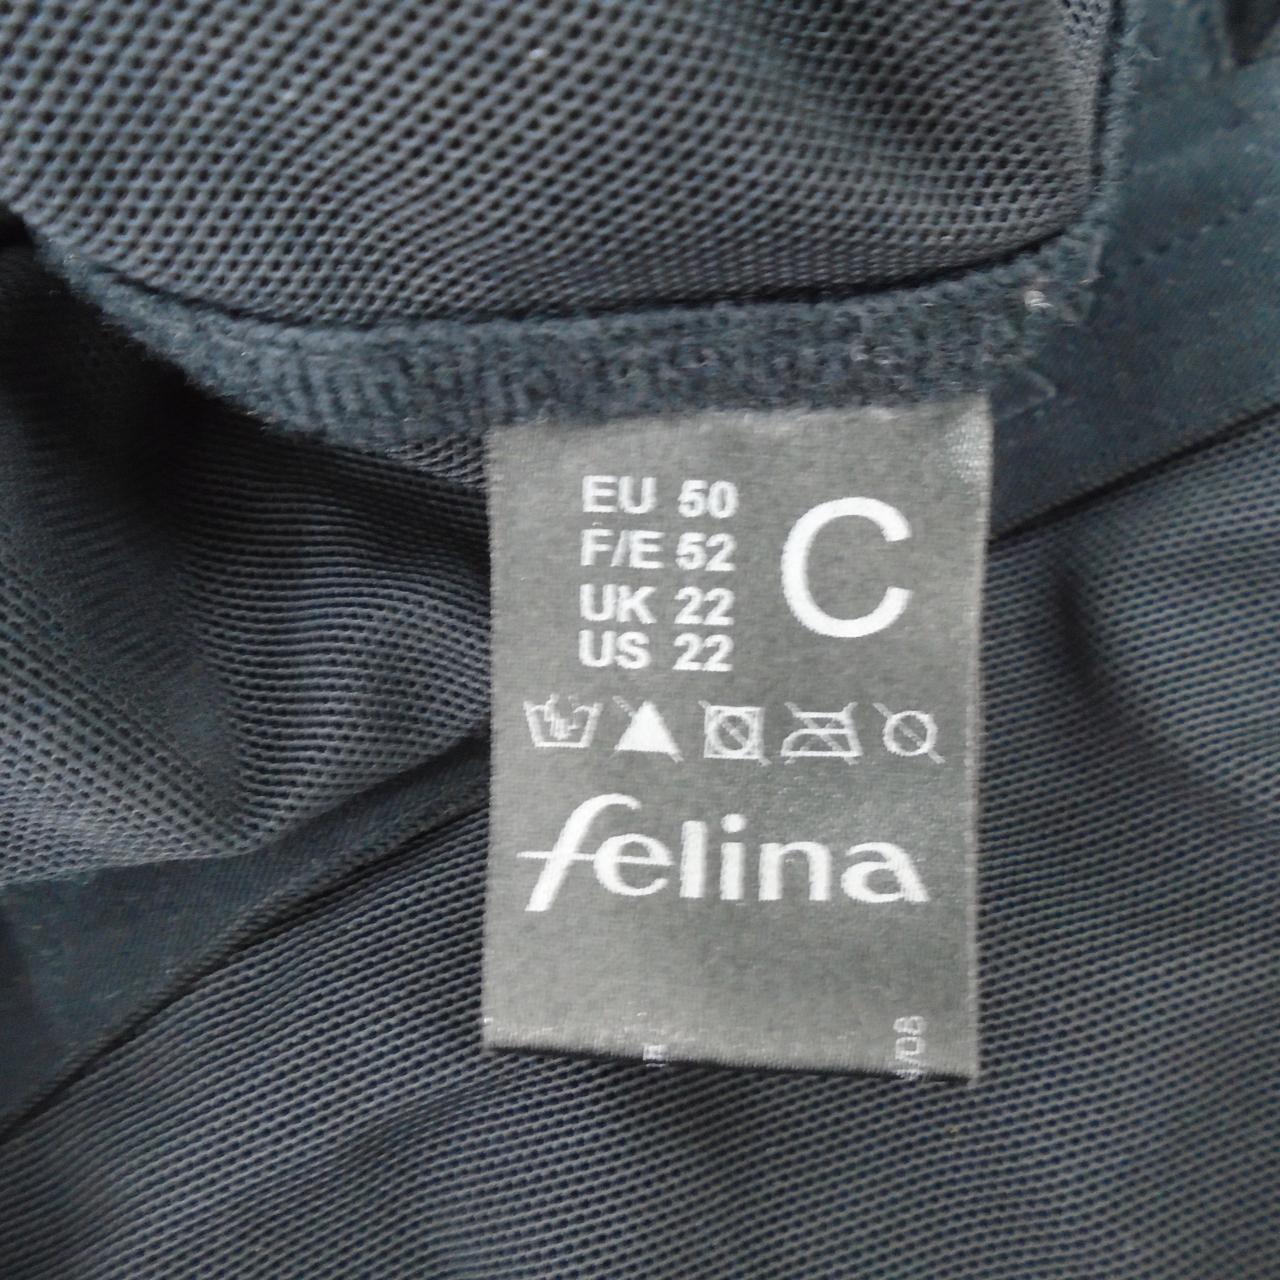 Women's Swimsuit Falina. Black. XXXXL. Used. Very good